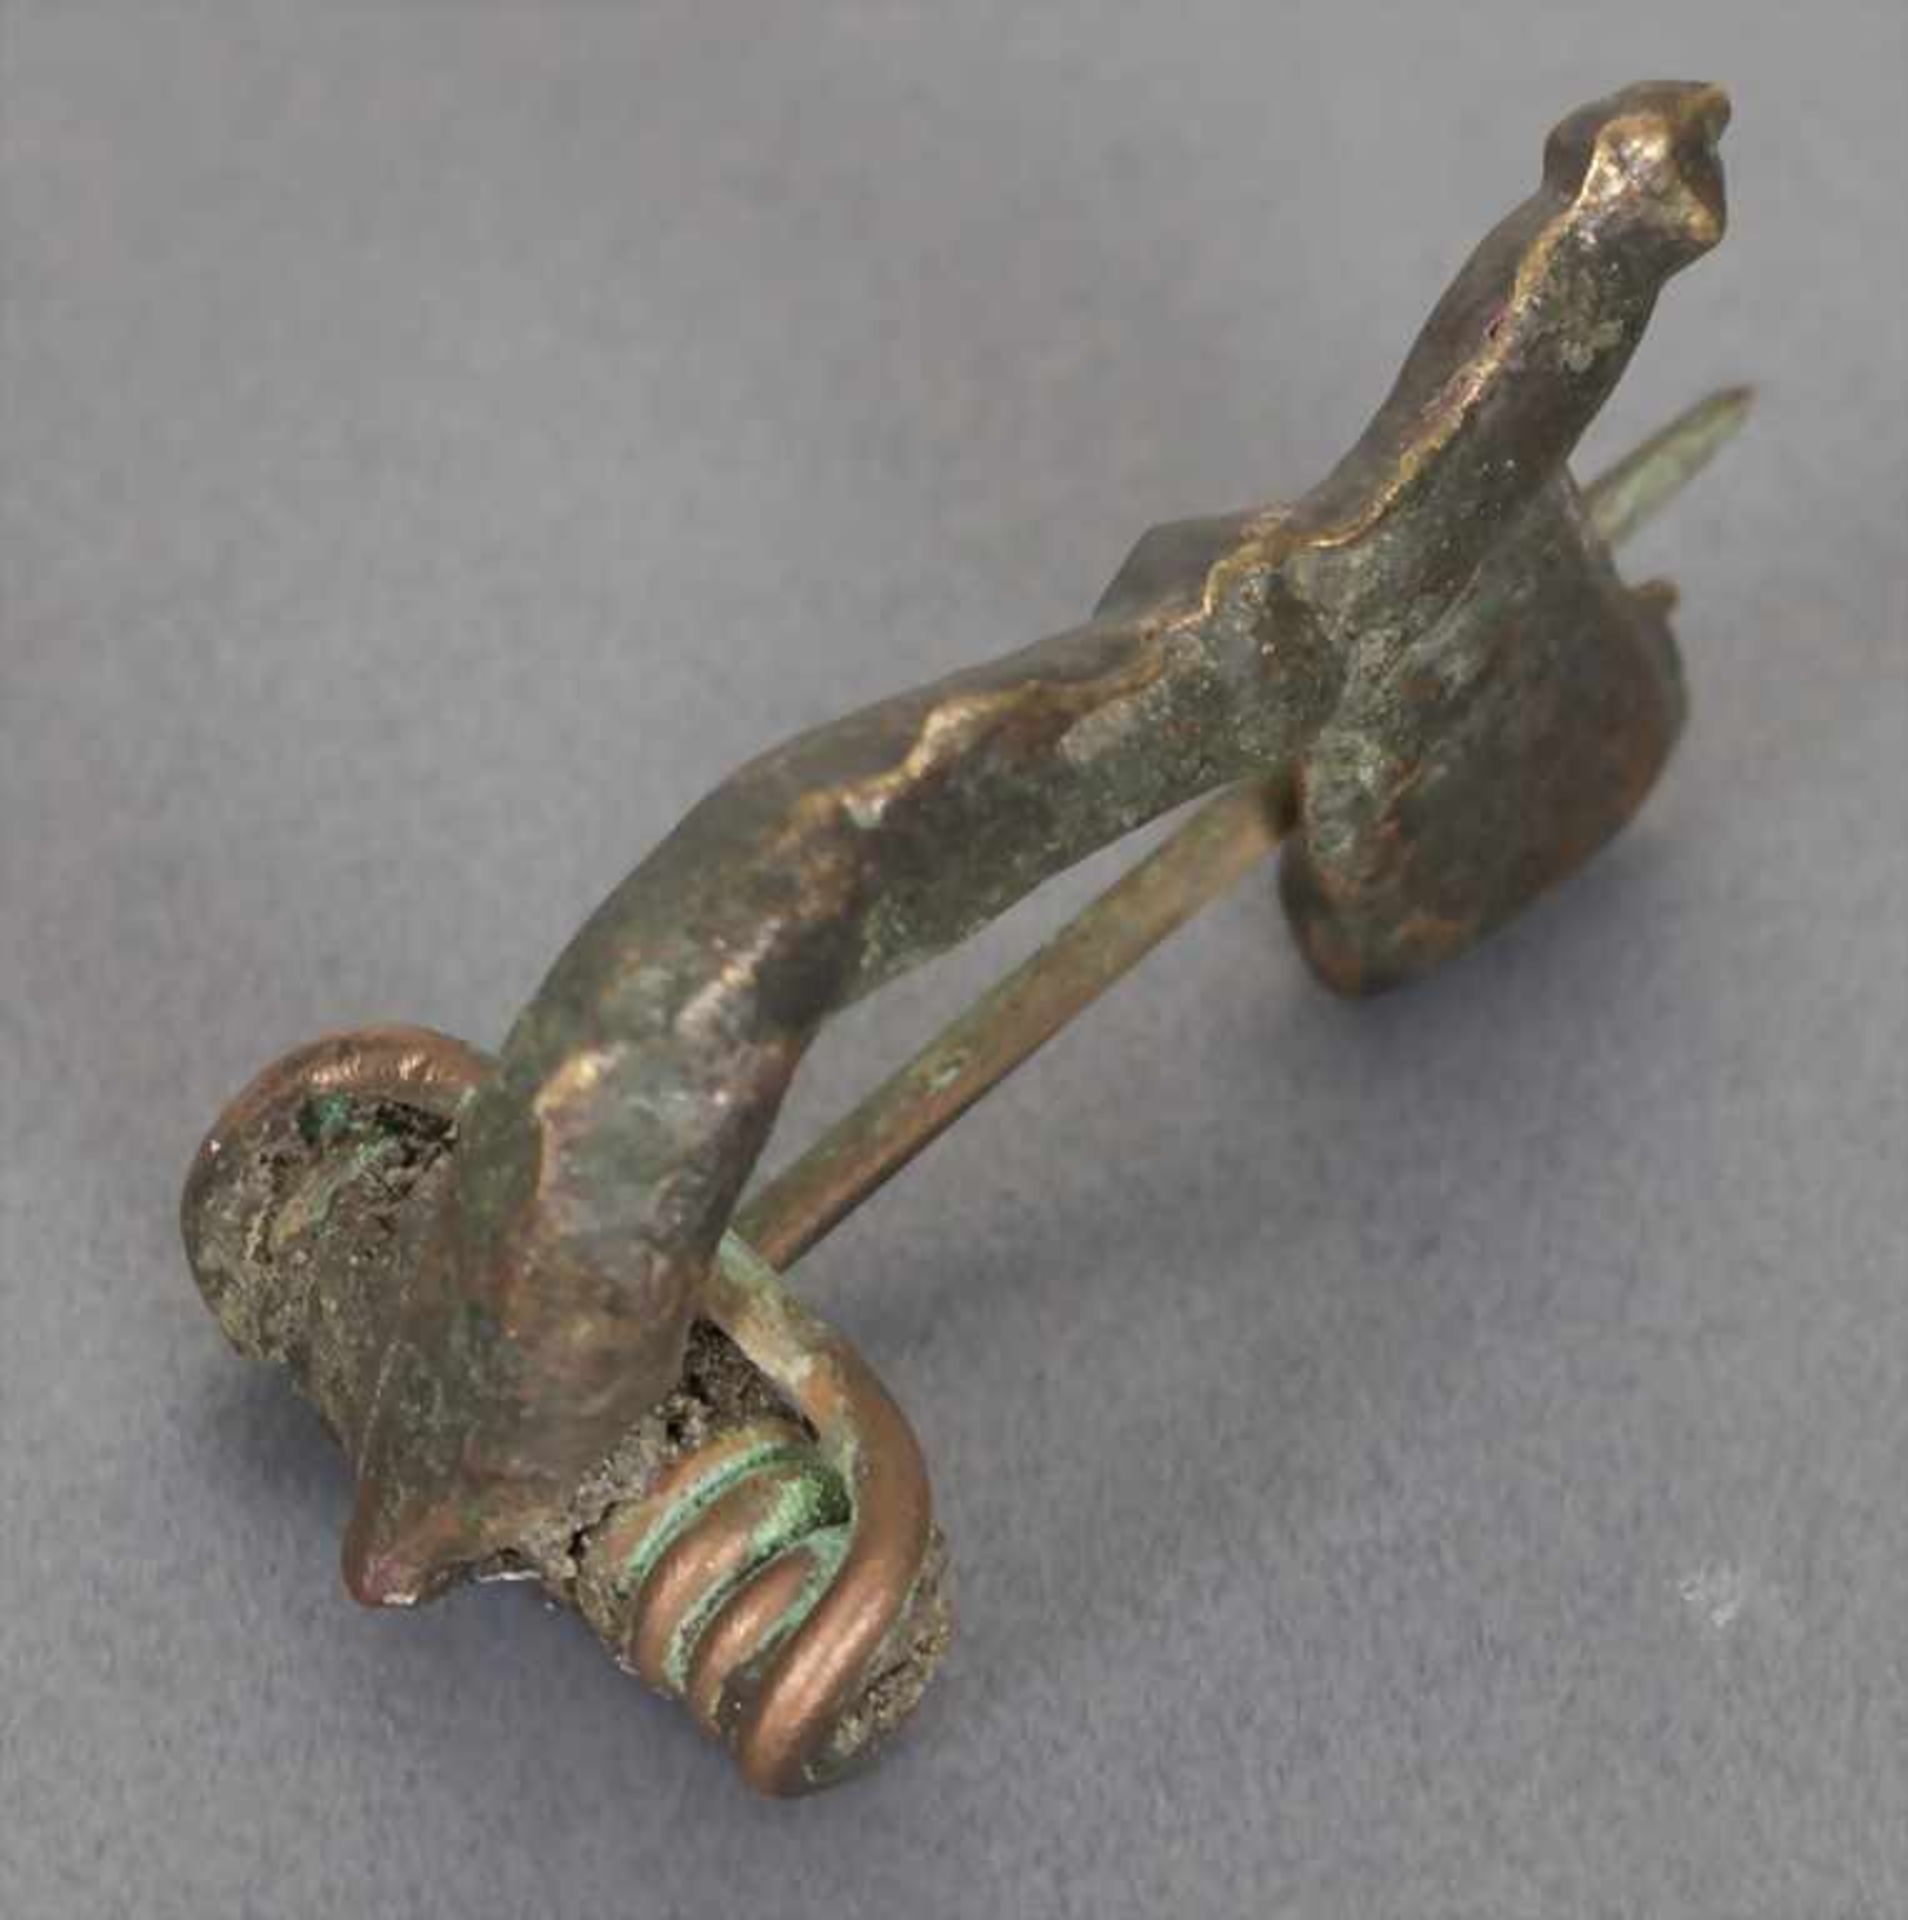 Römische Fibel / A Roman fibulaMaterial: Bronze,Länge: 3,5 cm,Zustand: gut, alt restauriert, - Bild 2 aus 2